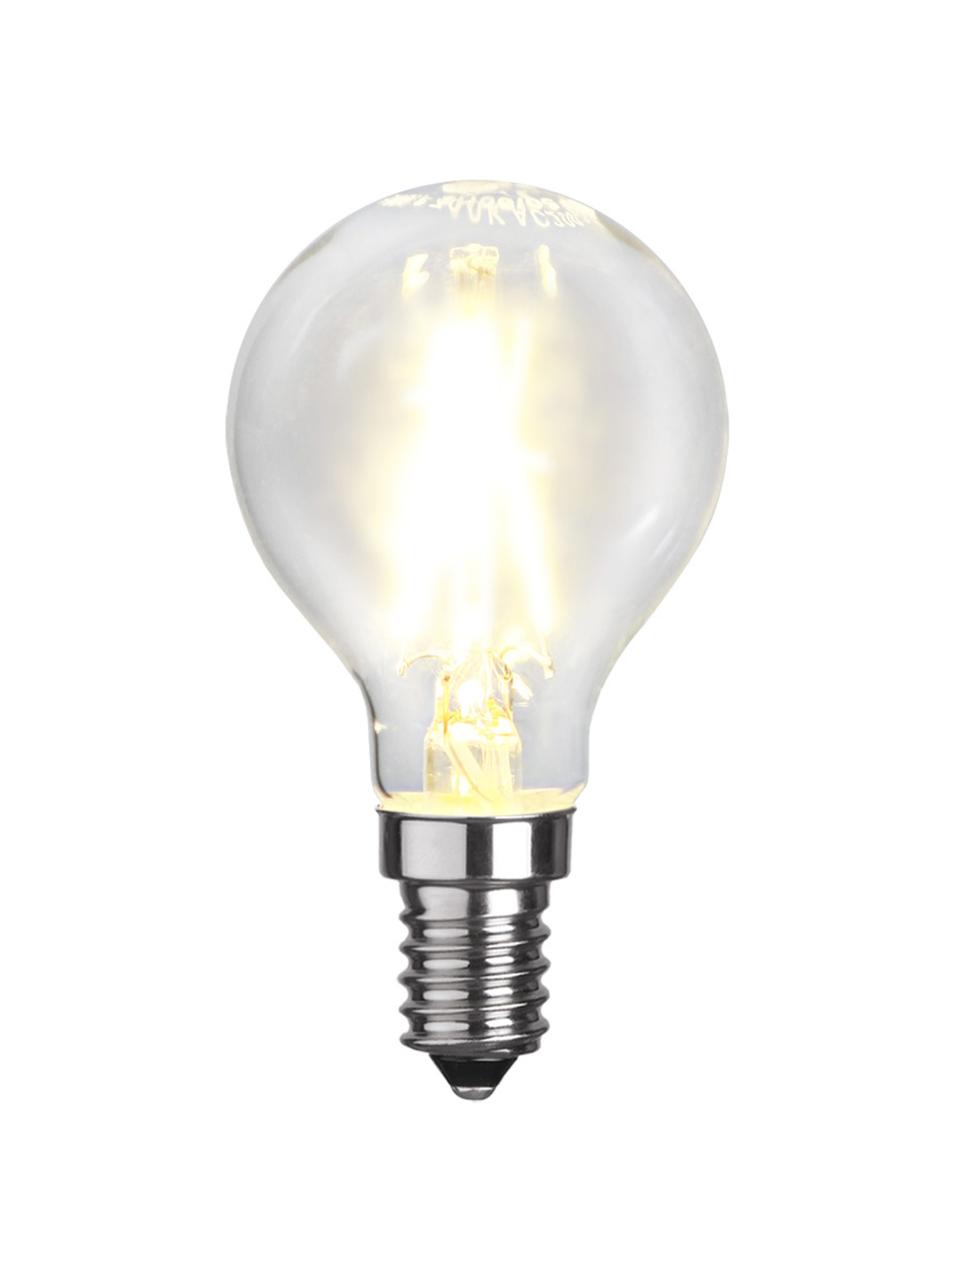 Ampoule E14, 250 lm, blanc chaud, 6 pièces, Transparent, Ø 5 x haut. 8 cm